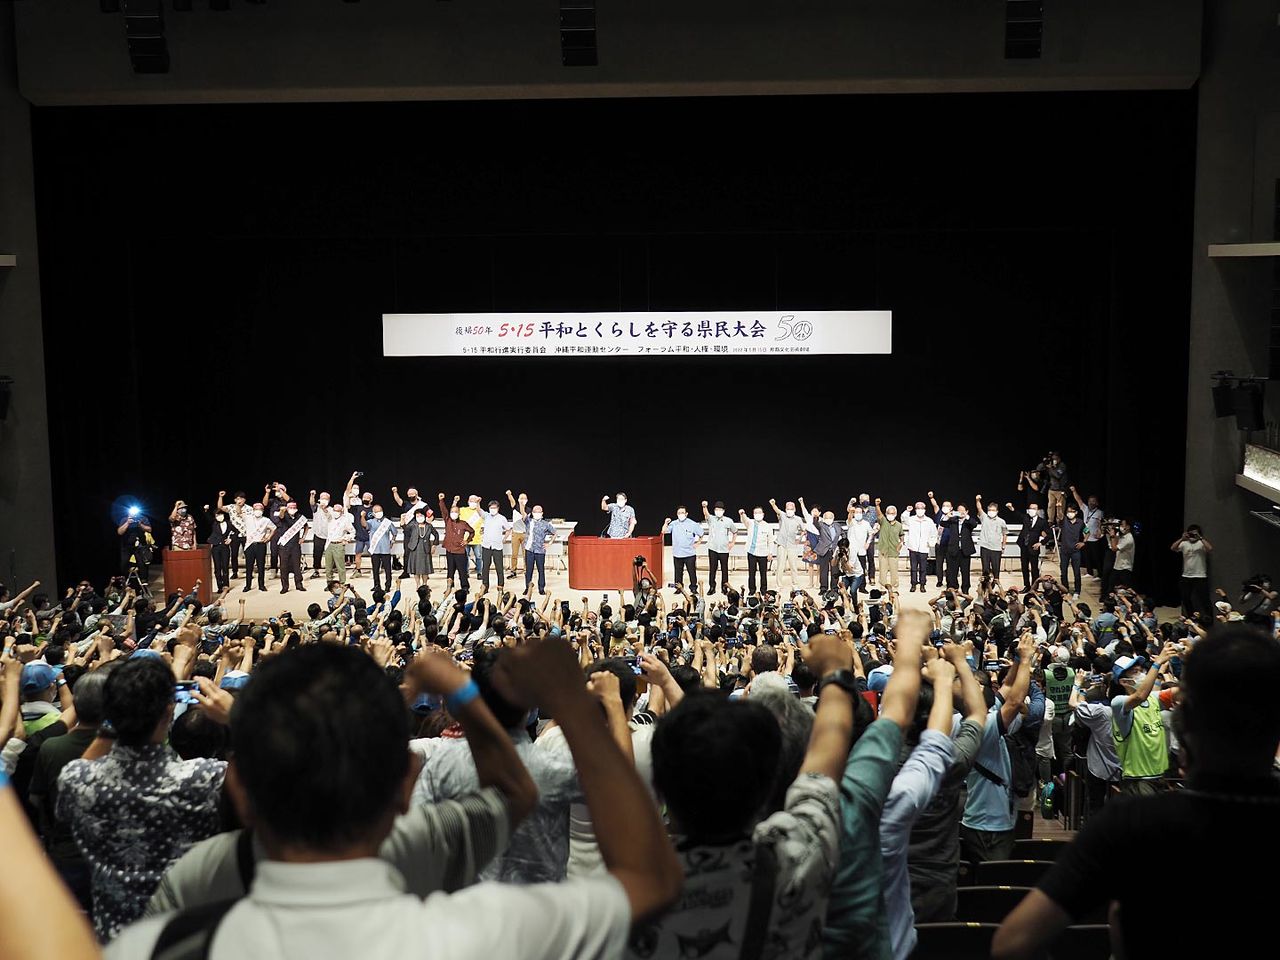 在沖縄米軍基地の整理縮小などを求めて、拳を突き上げる「5・15平和とくらしを守る県民大会」の参加者たち